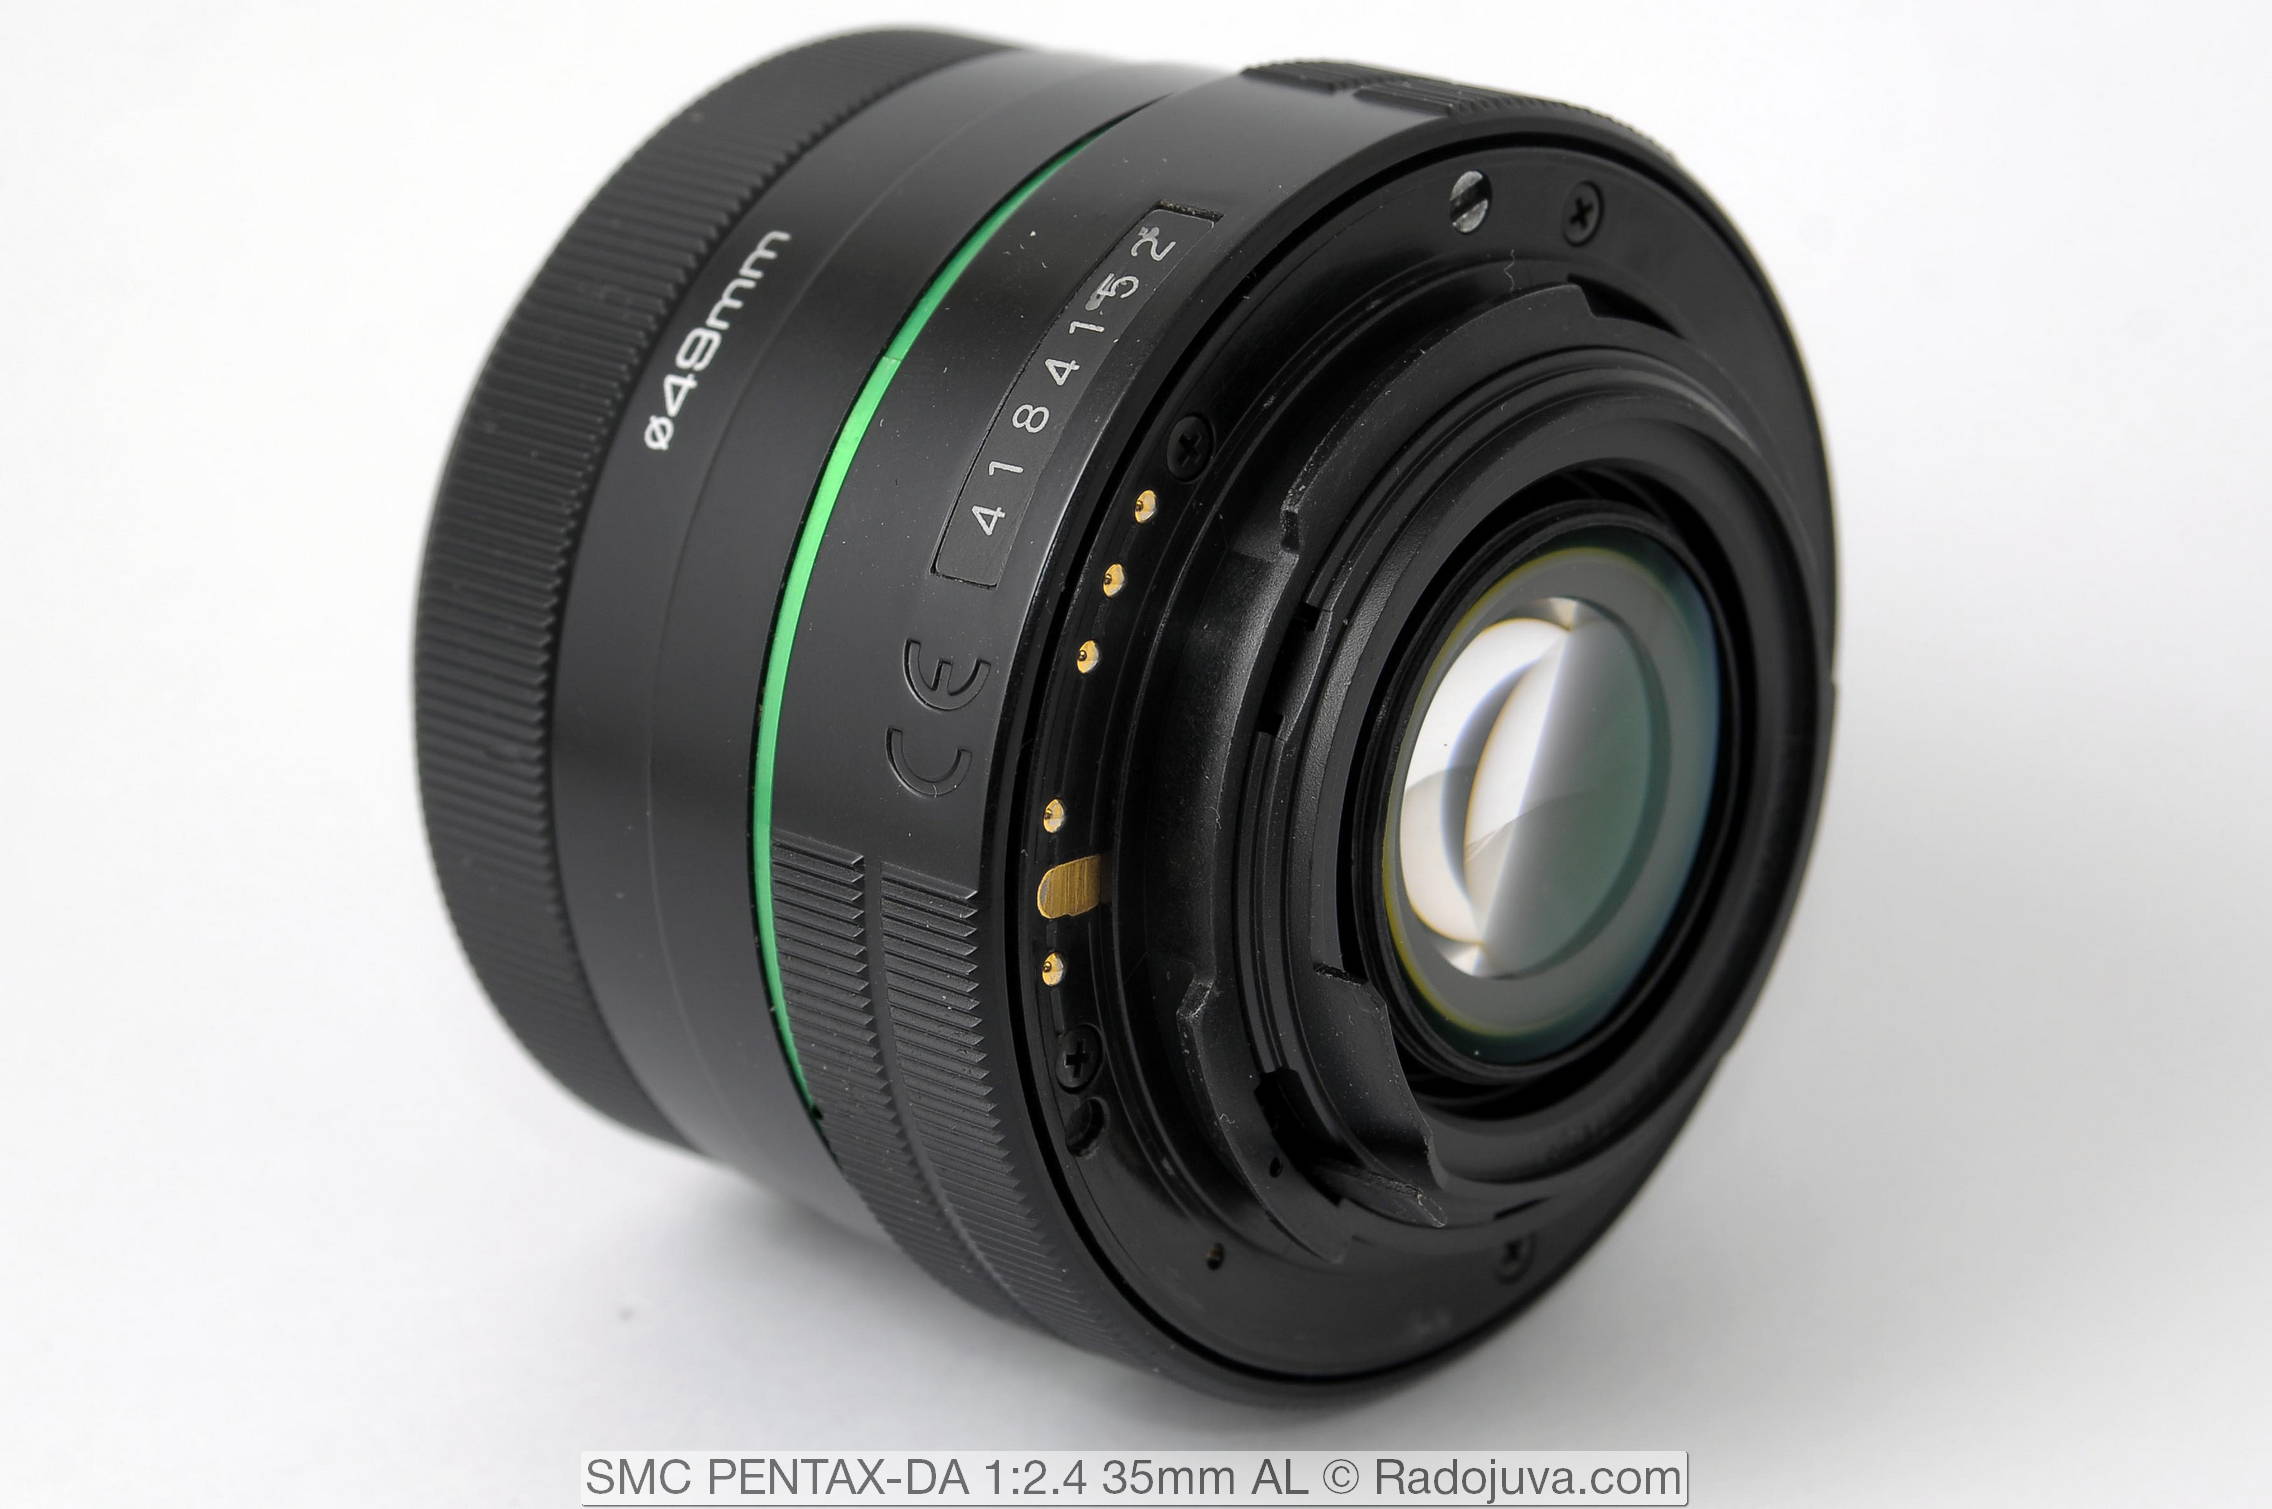 SMC PENTAX-DA 1:2.4 35mm AL